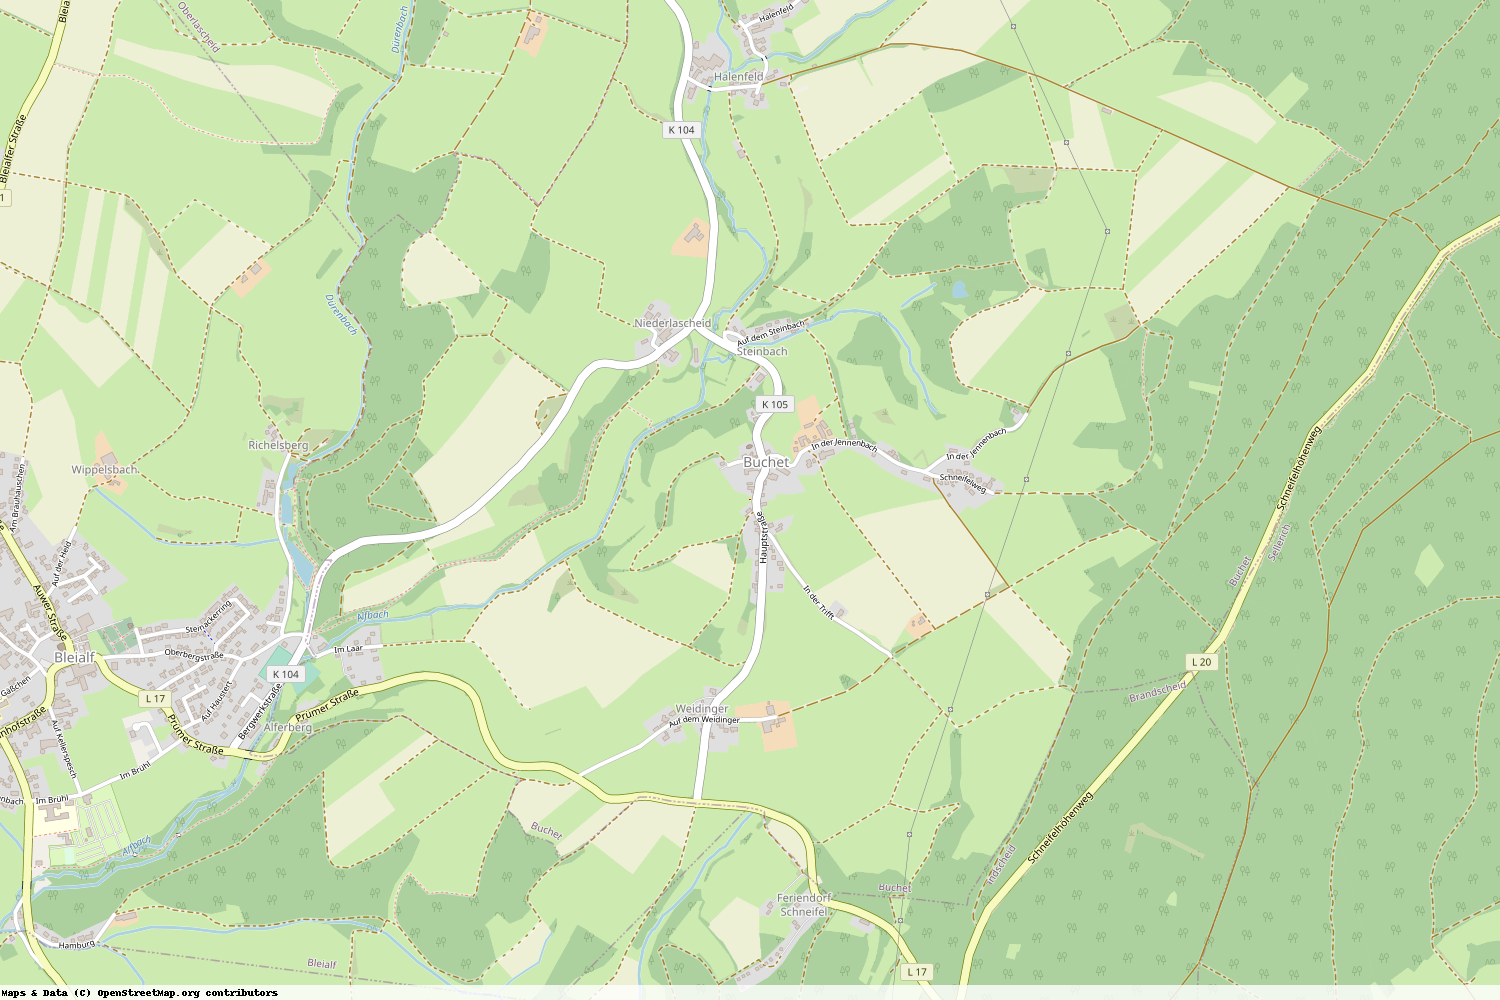 Ist gerade Stromausfall in Rheinland-Pfalz - Eifelkreis Bitburg-Prüm - Buchet?